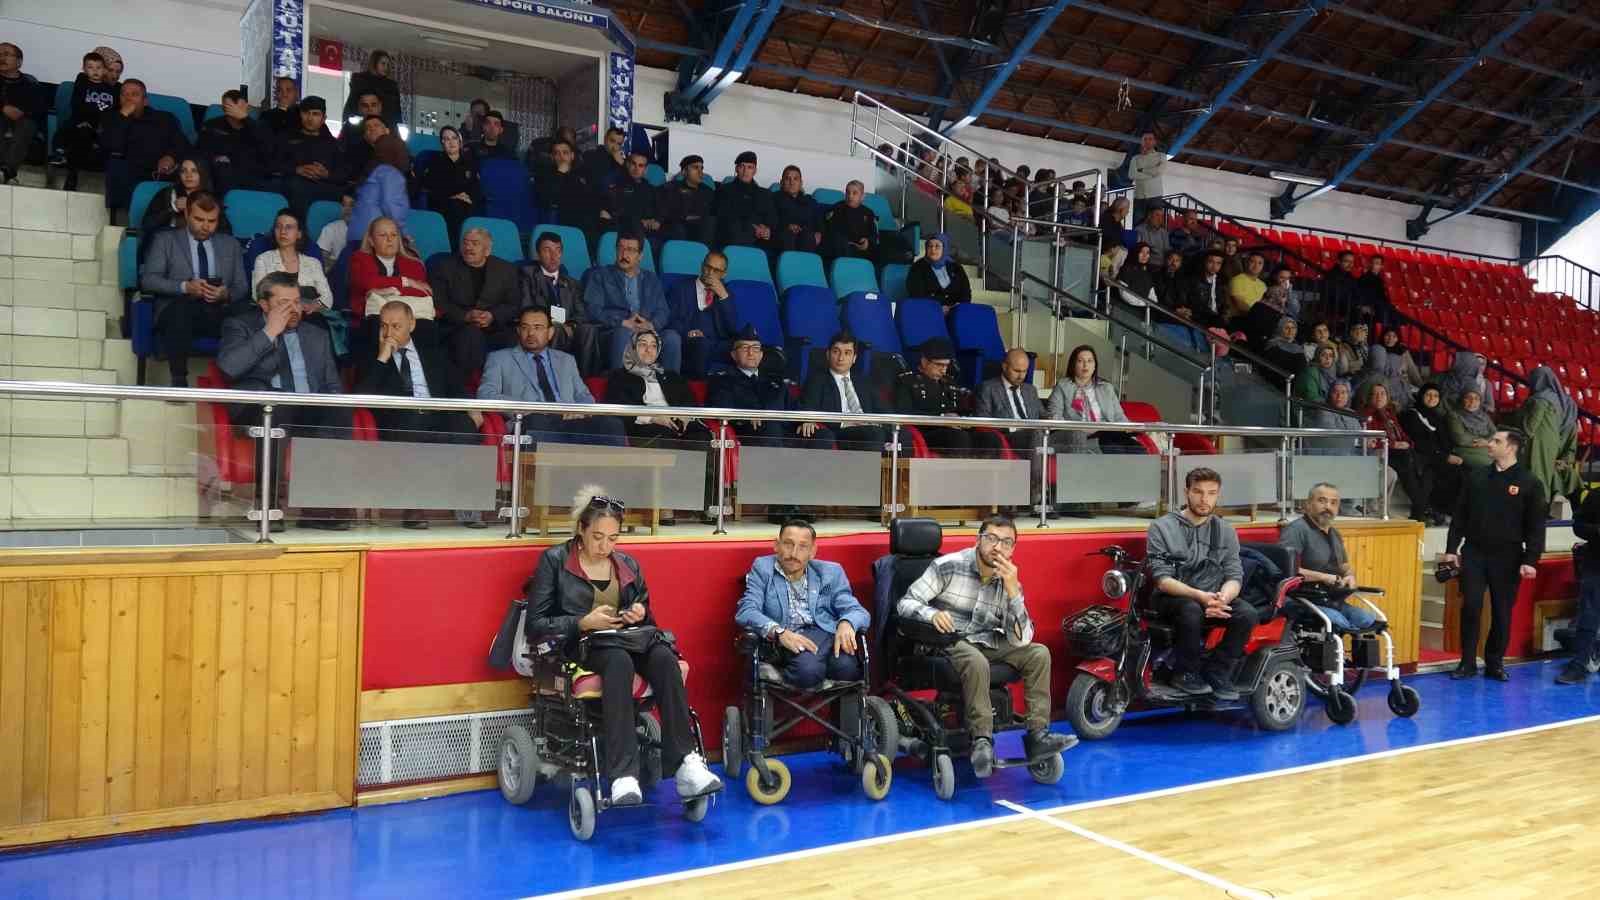 Kütahya’da Engelliler Haftasına özel Hemsball Şampiyonası